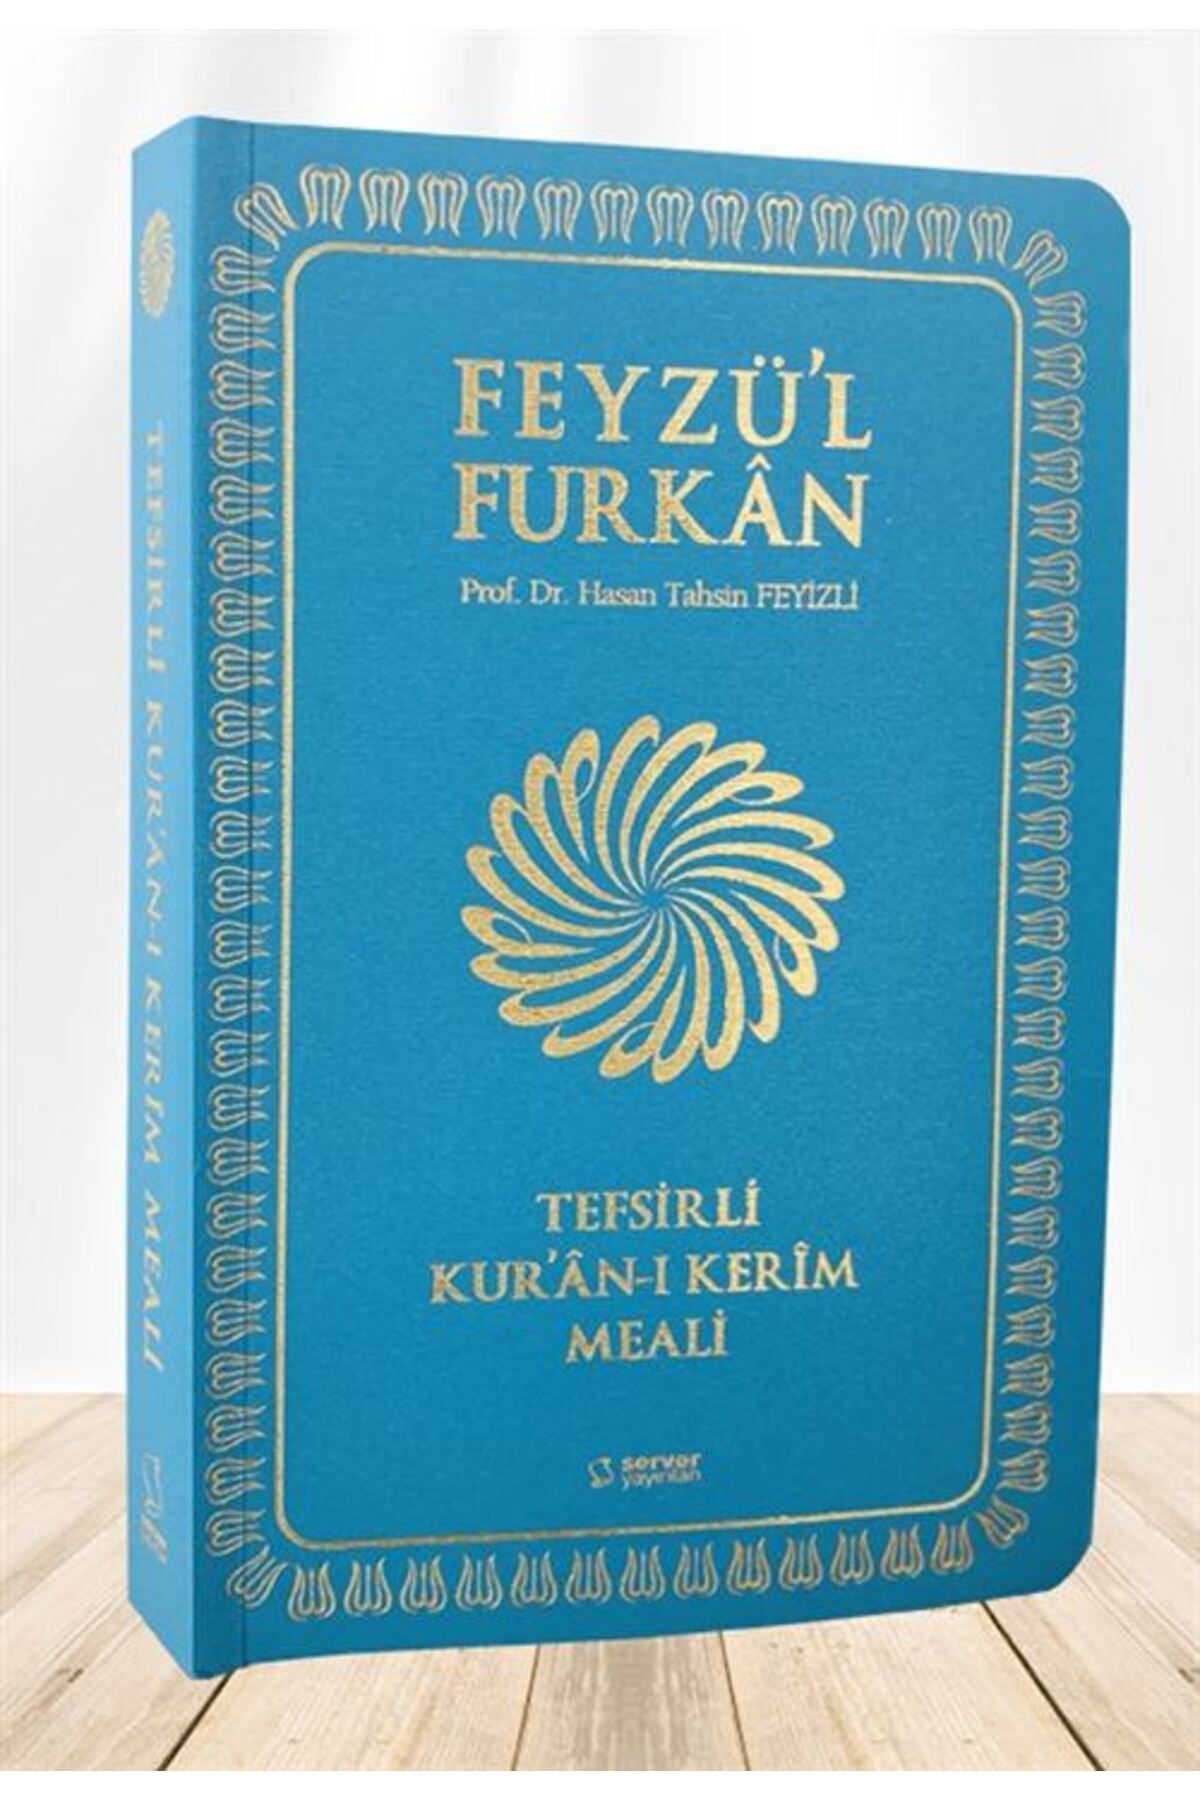 Server Yayınları Feyzü'l Furkan Tefsirli Kur'an-ı Kerim Meali Metinsiz (CEP BOY,K.KAPAK) Turkuaz Kod:329 & Sadece ...